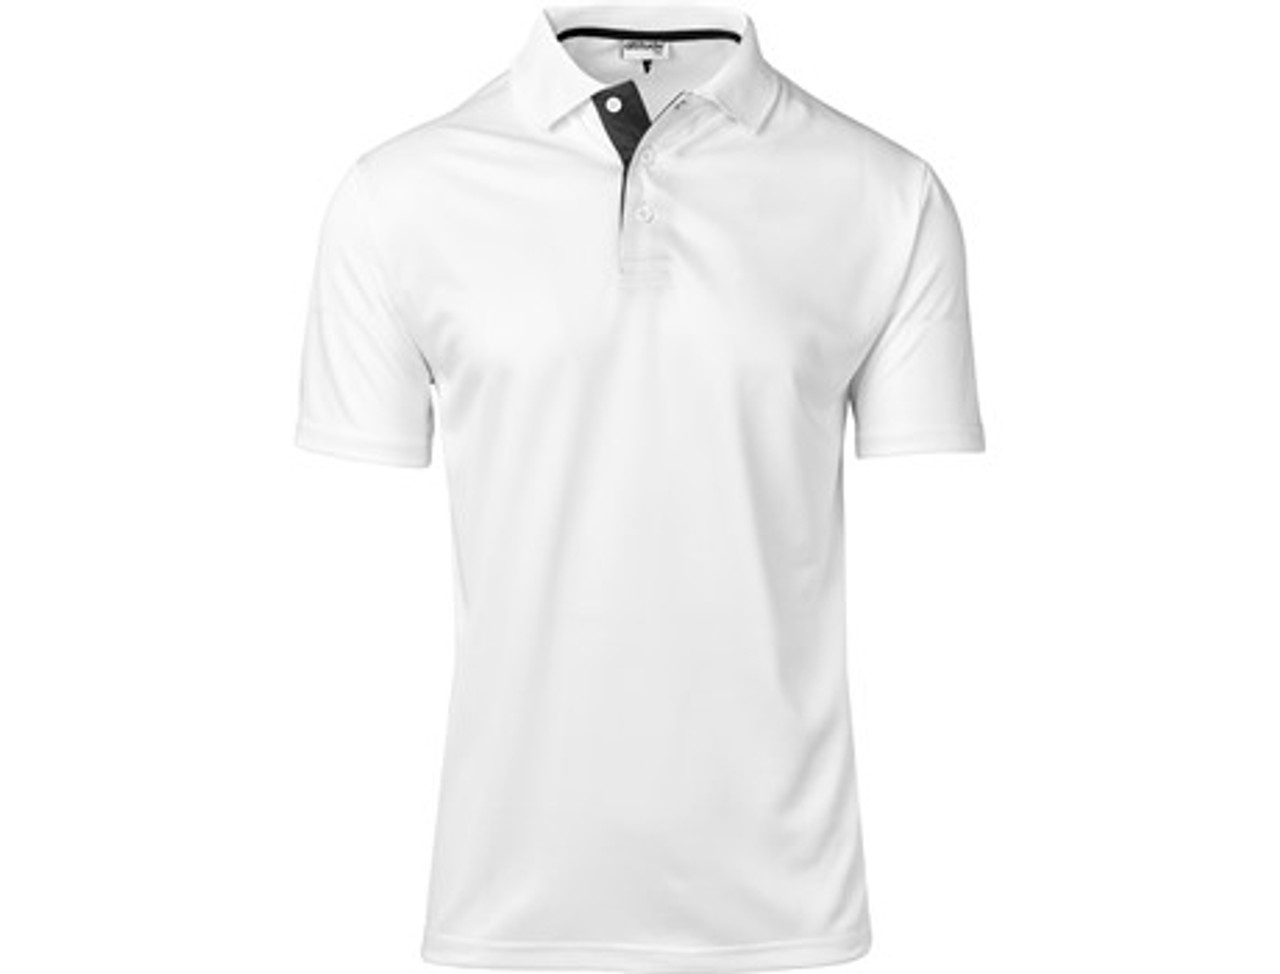 Tournament Golf Shirt | Corporate Golf Shirts | Azulwear Cape Town ...